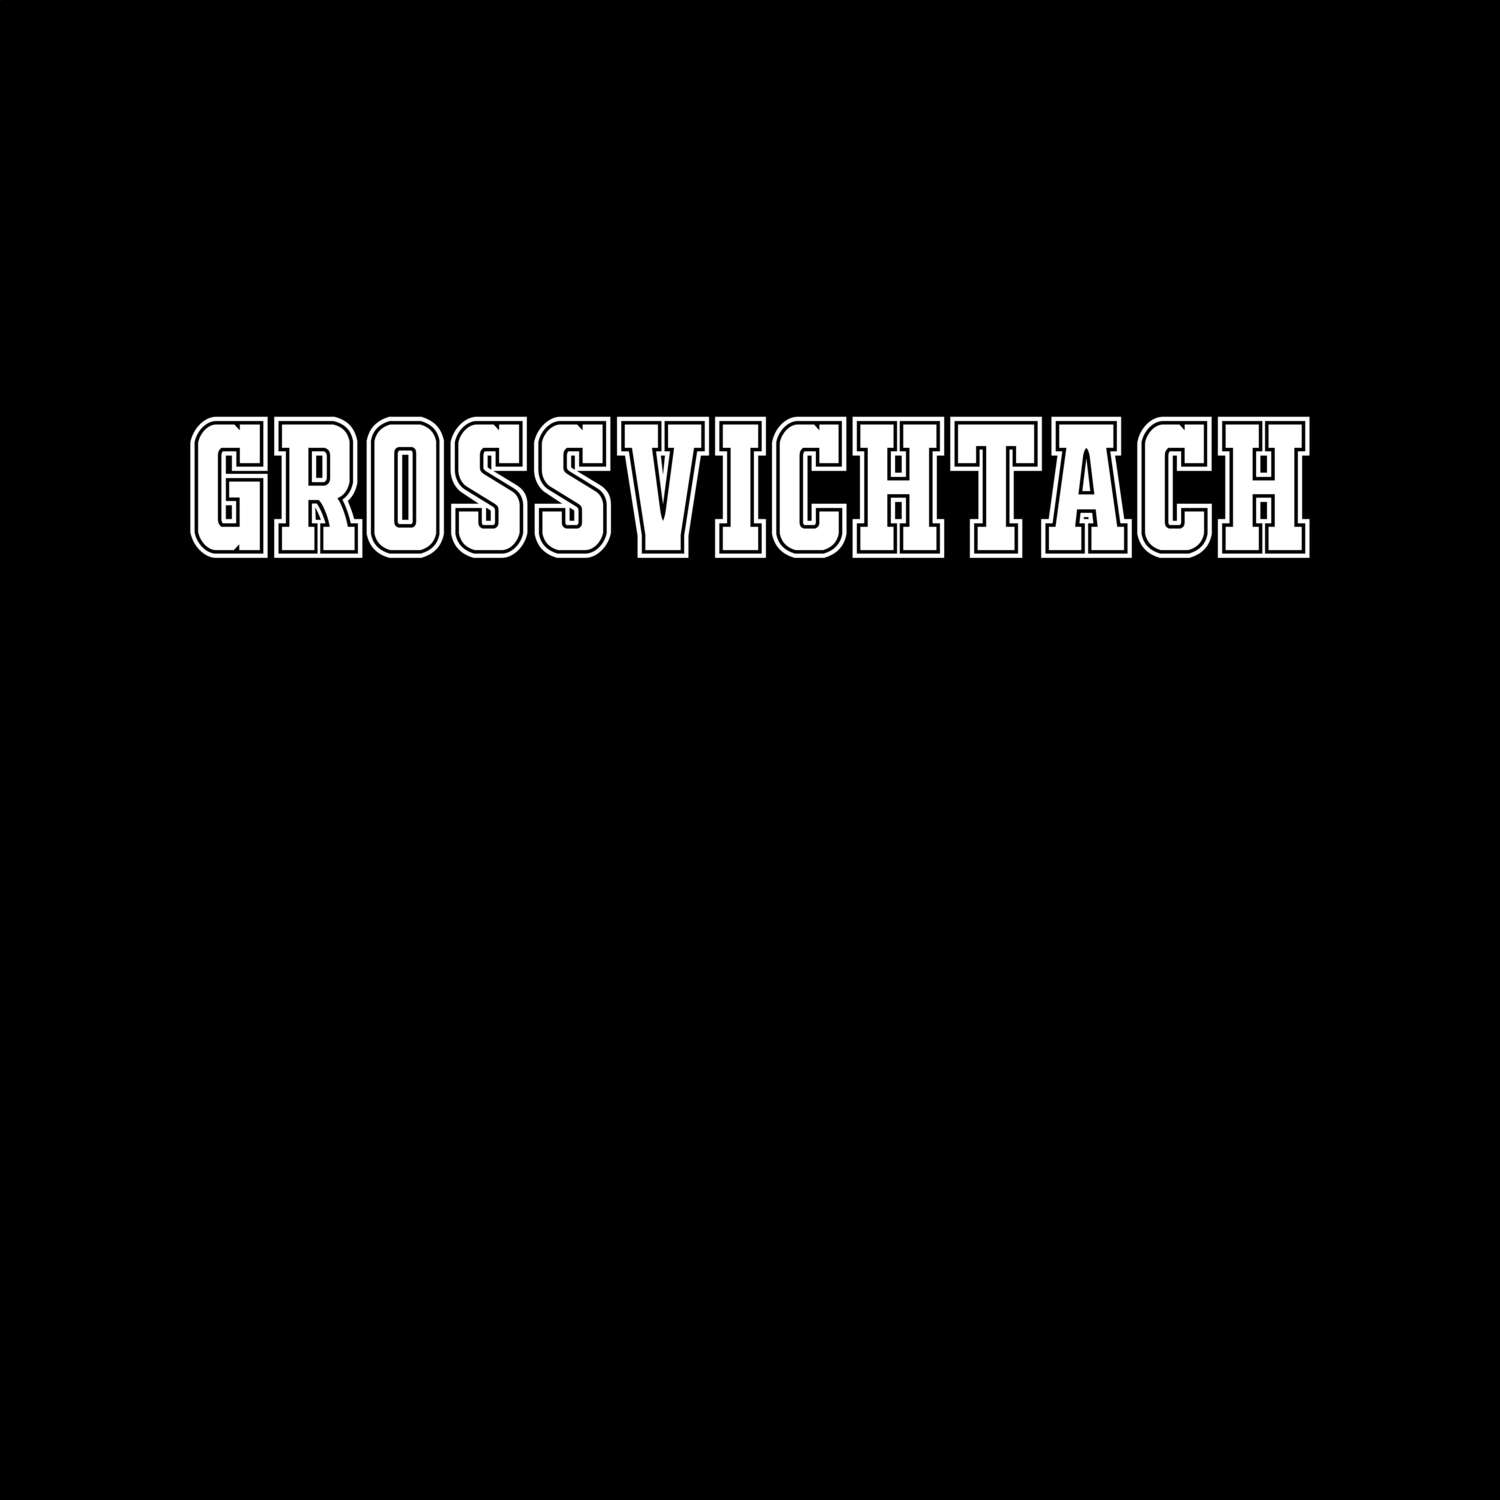 Großvichtach T-Shirt »Classic«